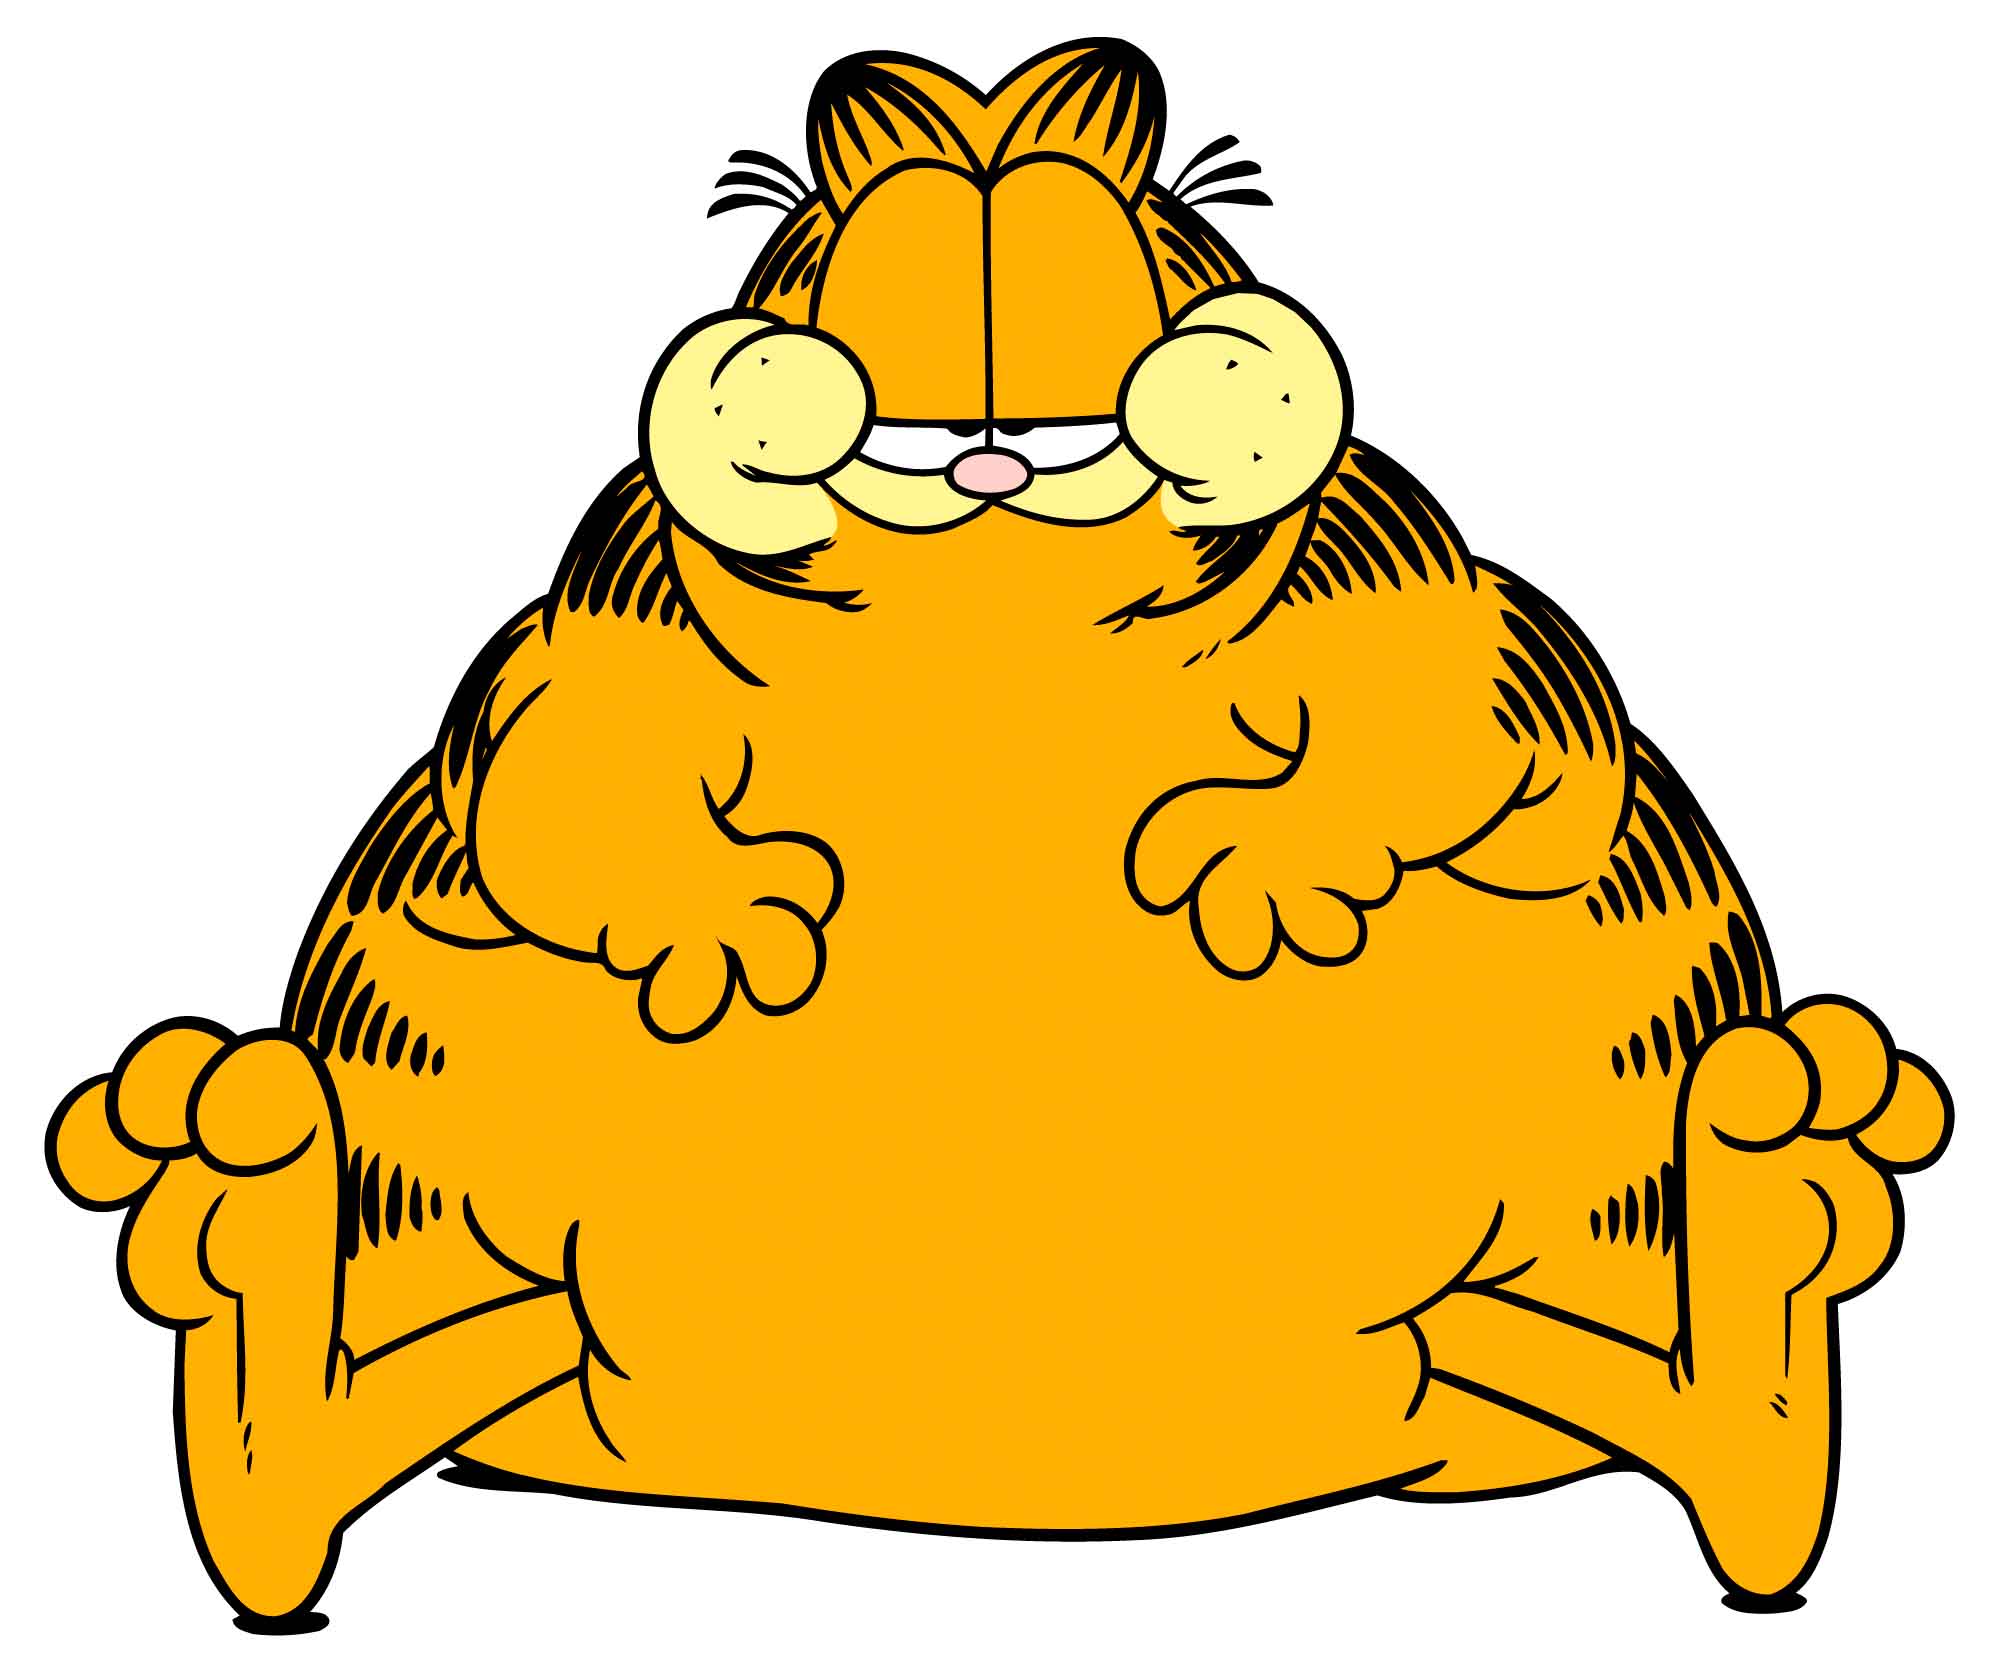 Met Garfield in gevecht tegen obesitas